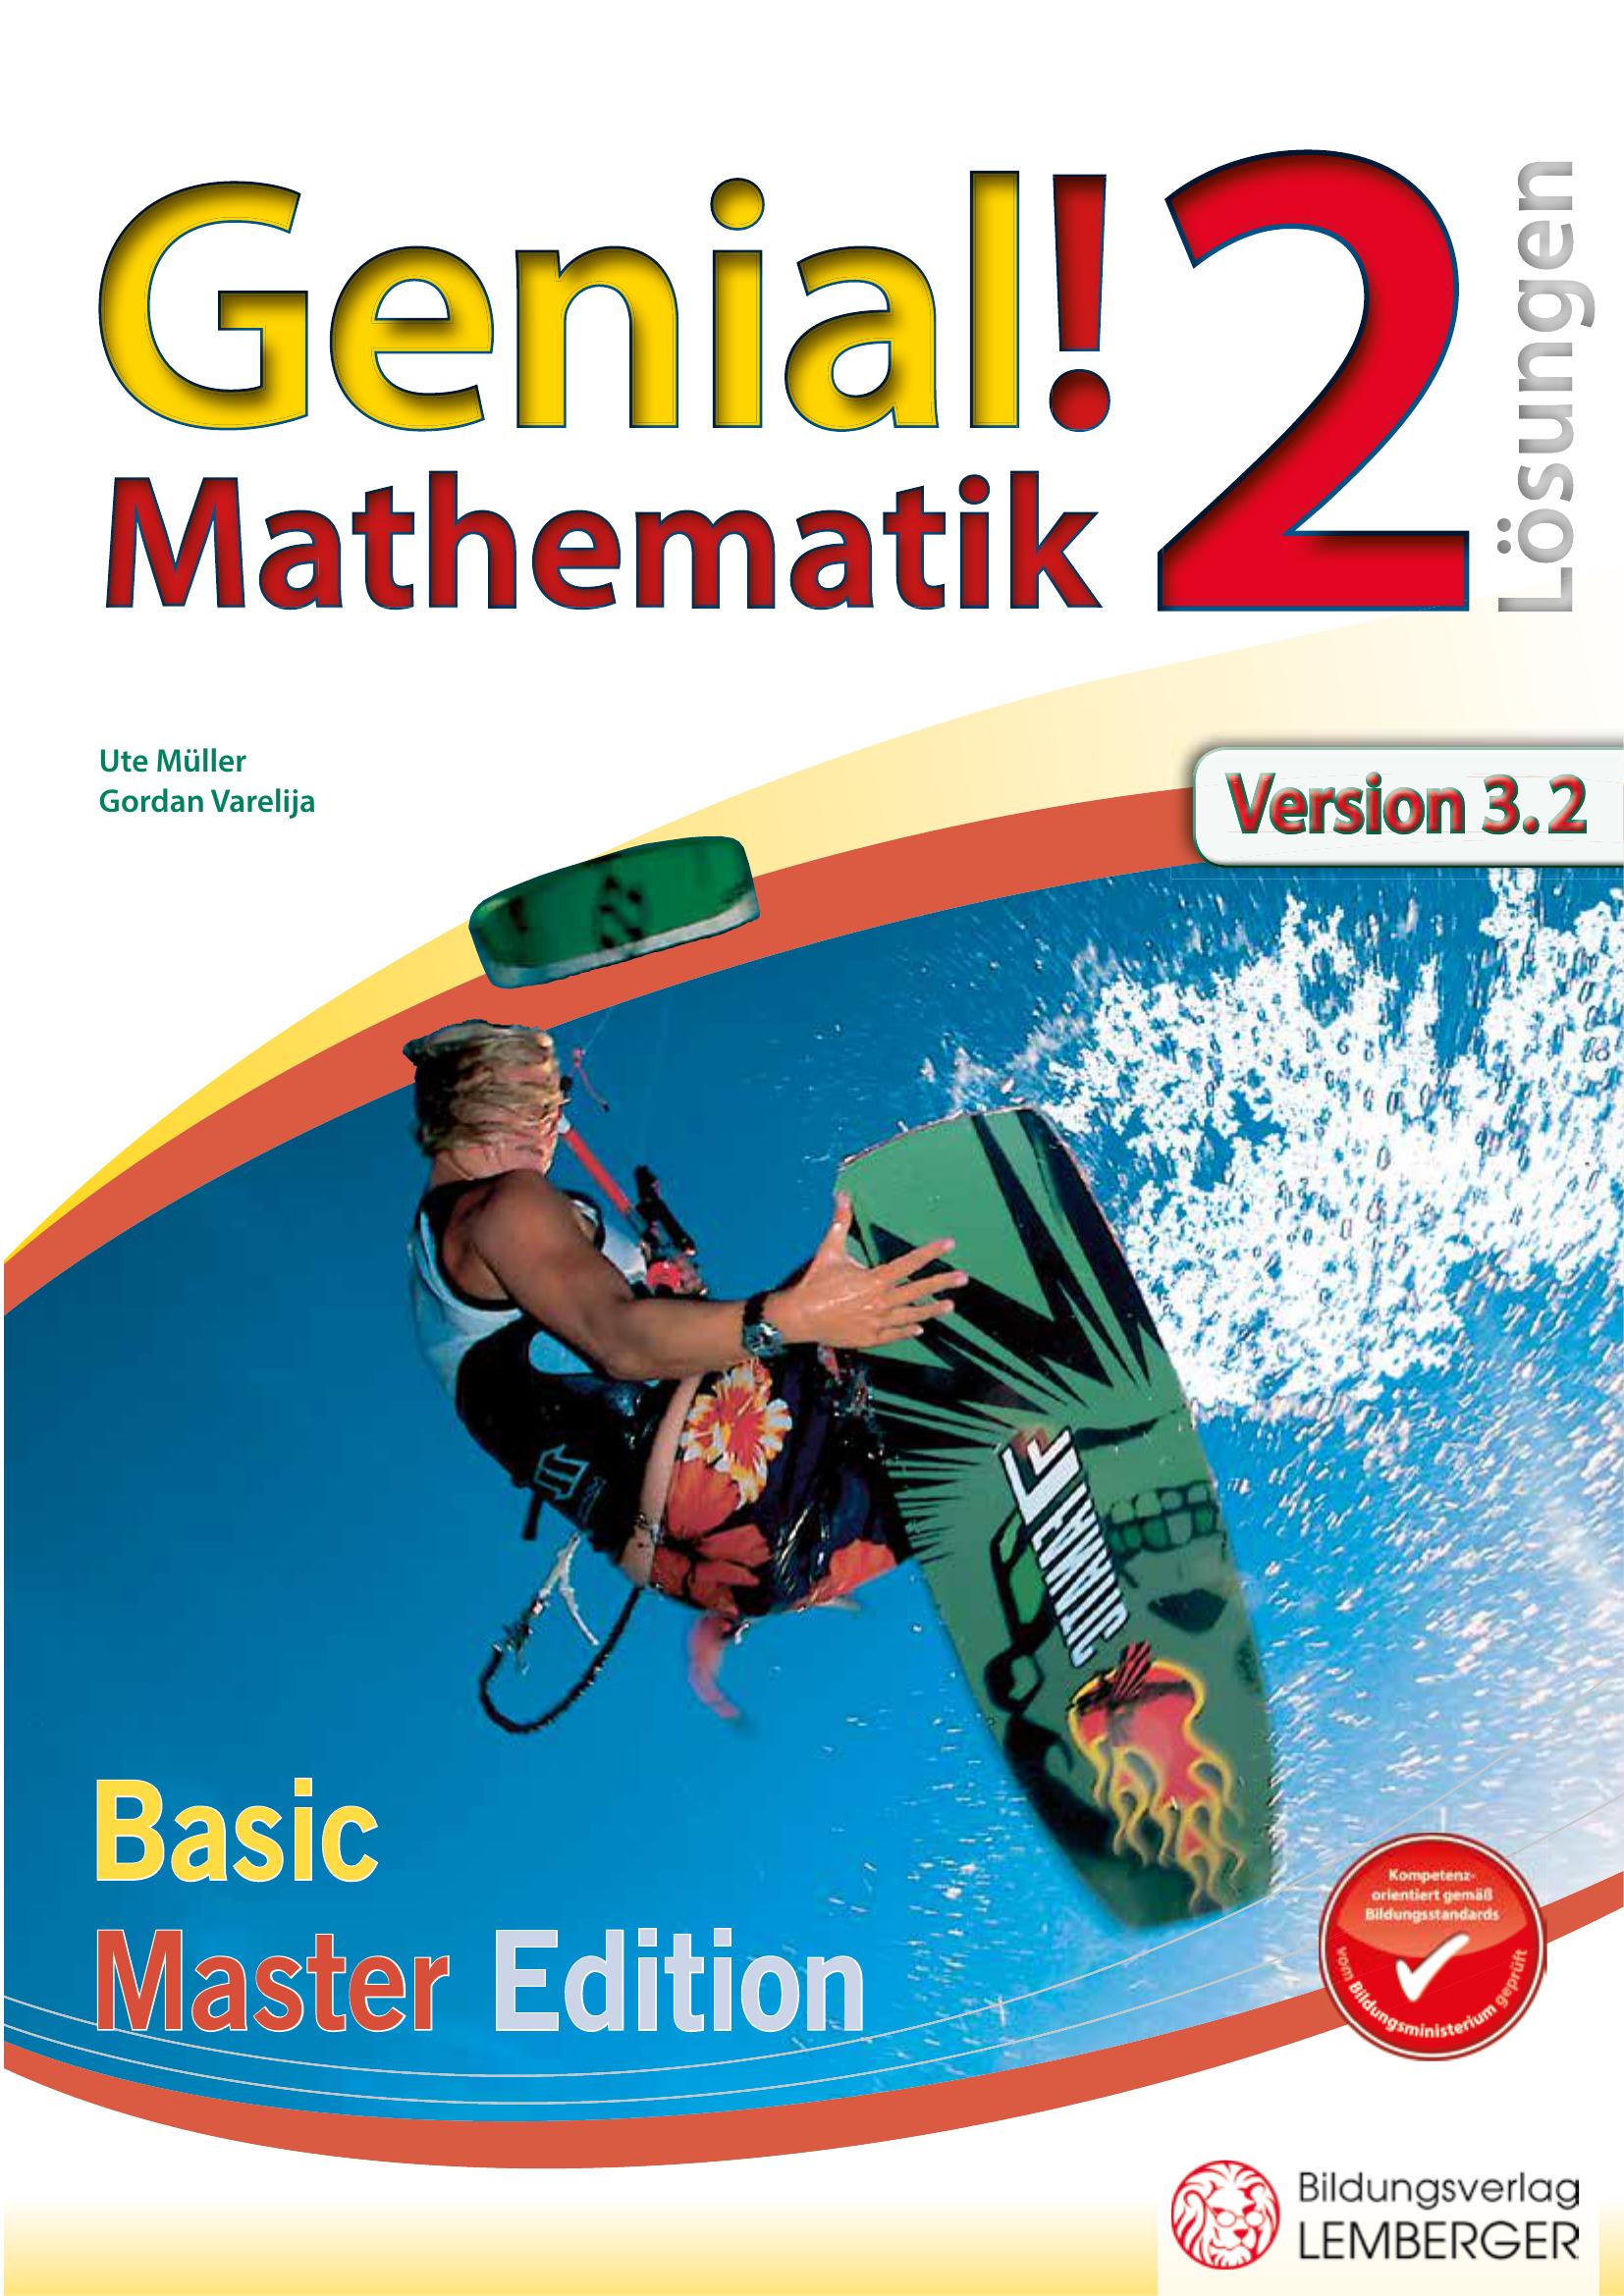 Genial! Mathematik 2 IKT – Übungsteil Basic + Master Edition v3.2 – Lösungen